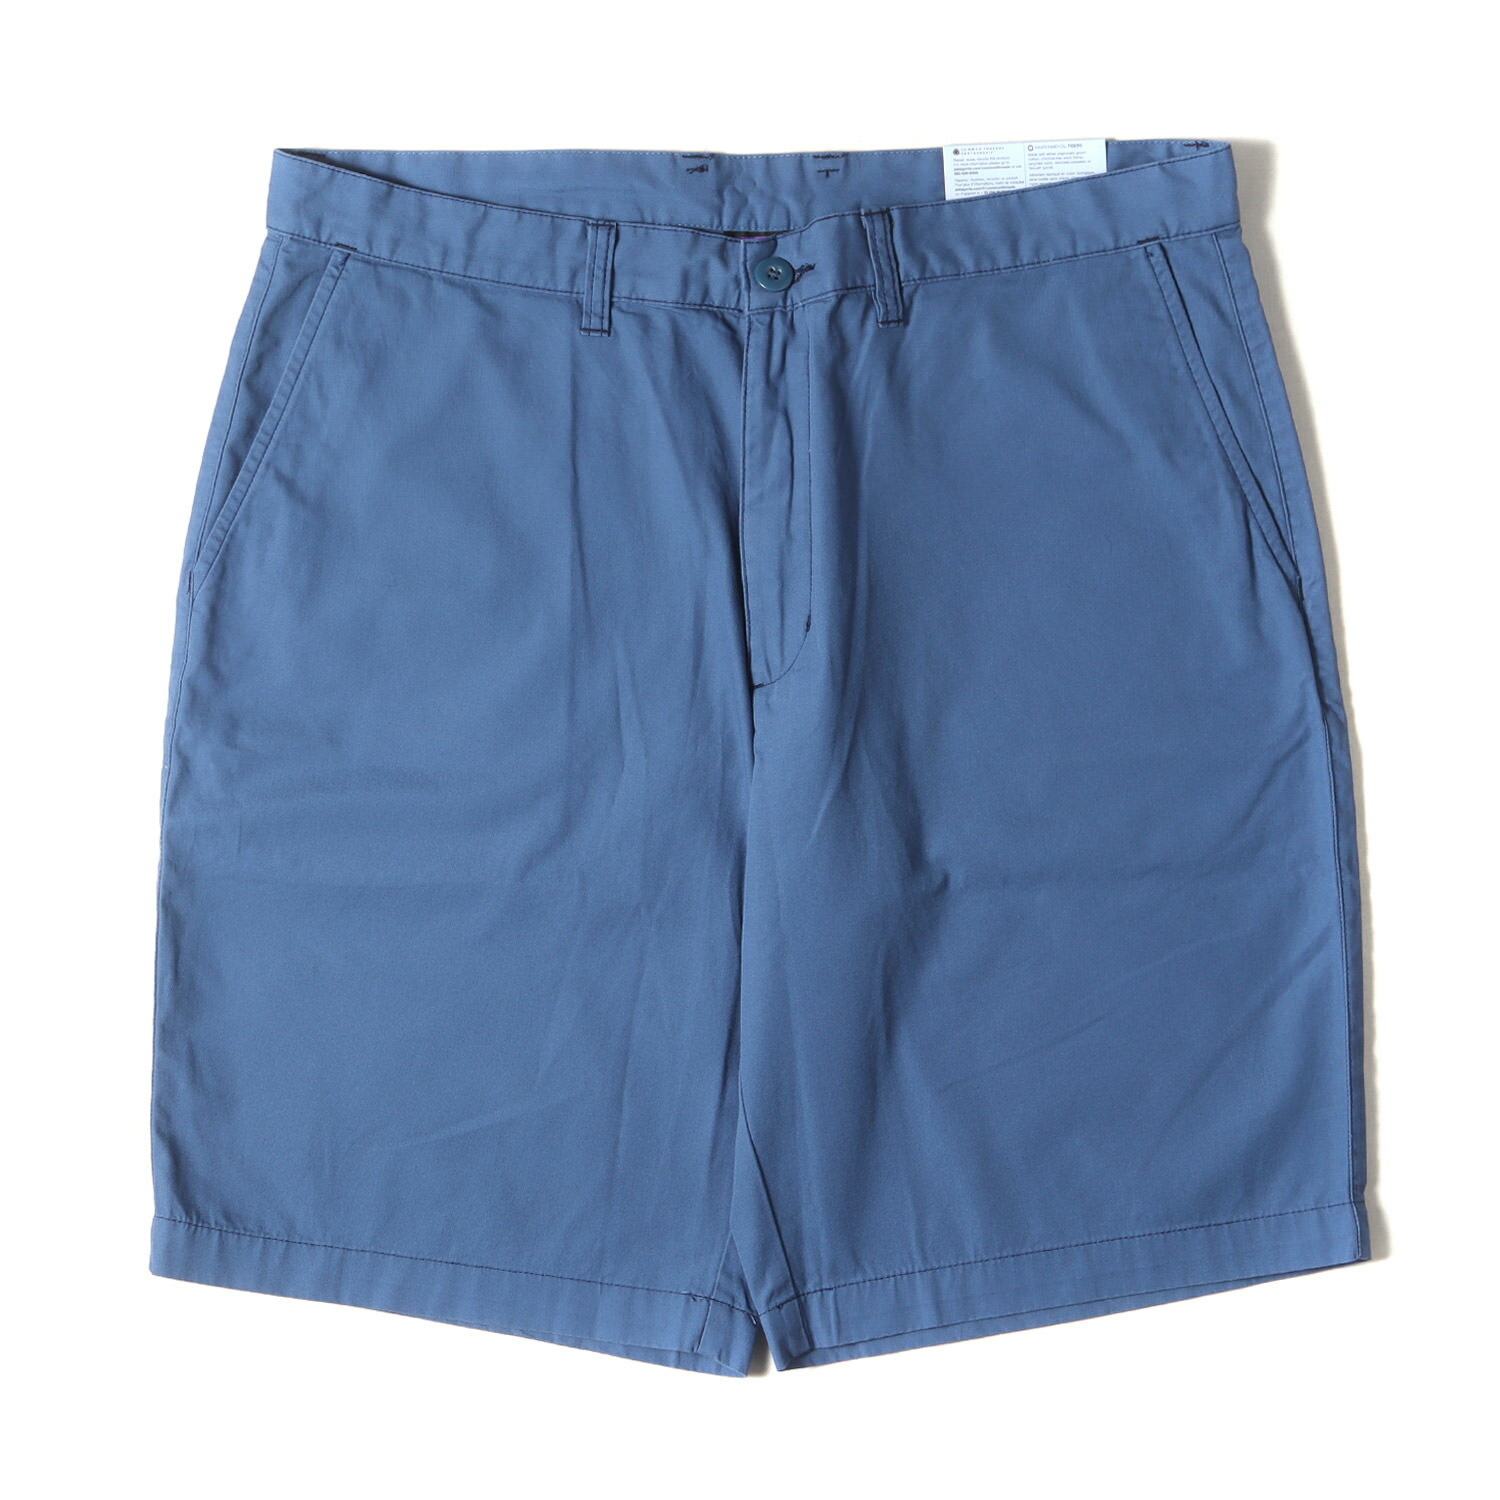 Patagonia パタゴニア パンツ サイズ:36 14SS オール ウェア スポーツ ショーツ All-Wear Shorts 10 グラスブルー(GLSB) ボトムス ズボン ショートパンツ